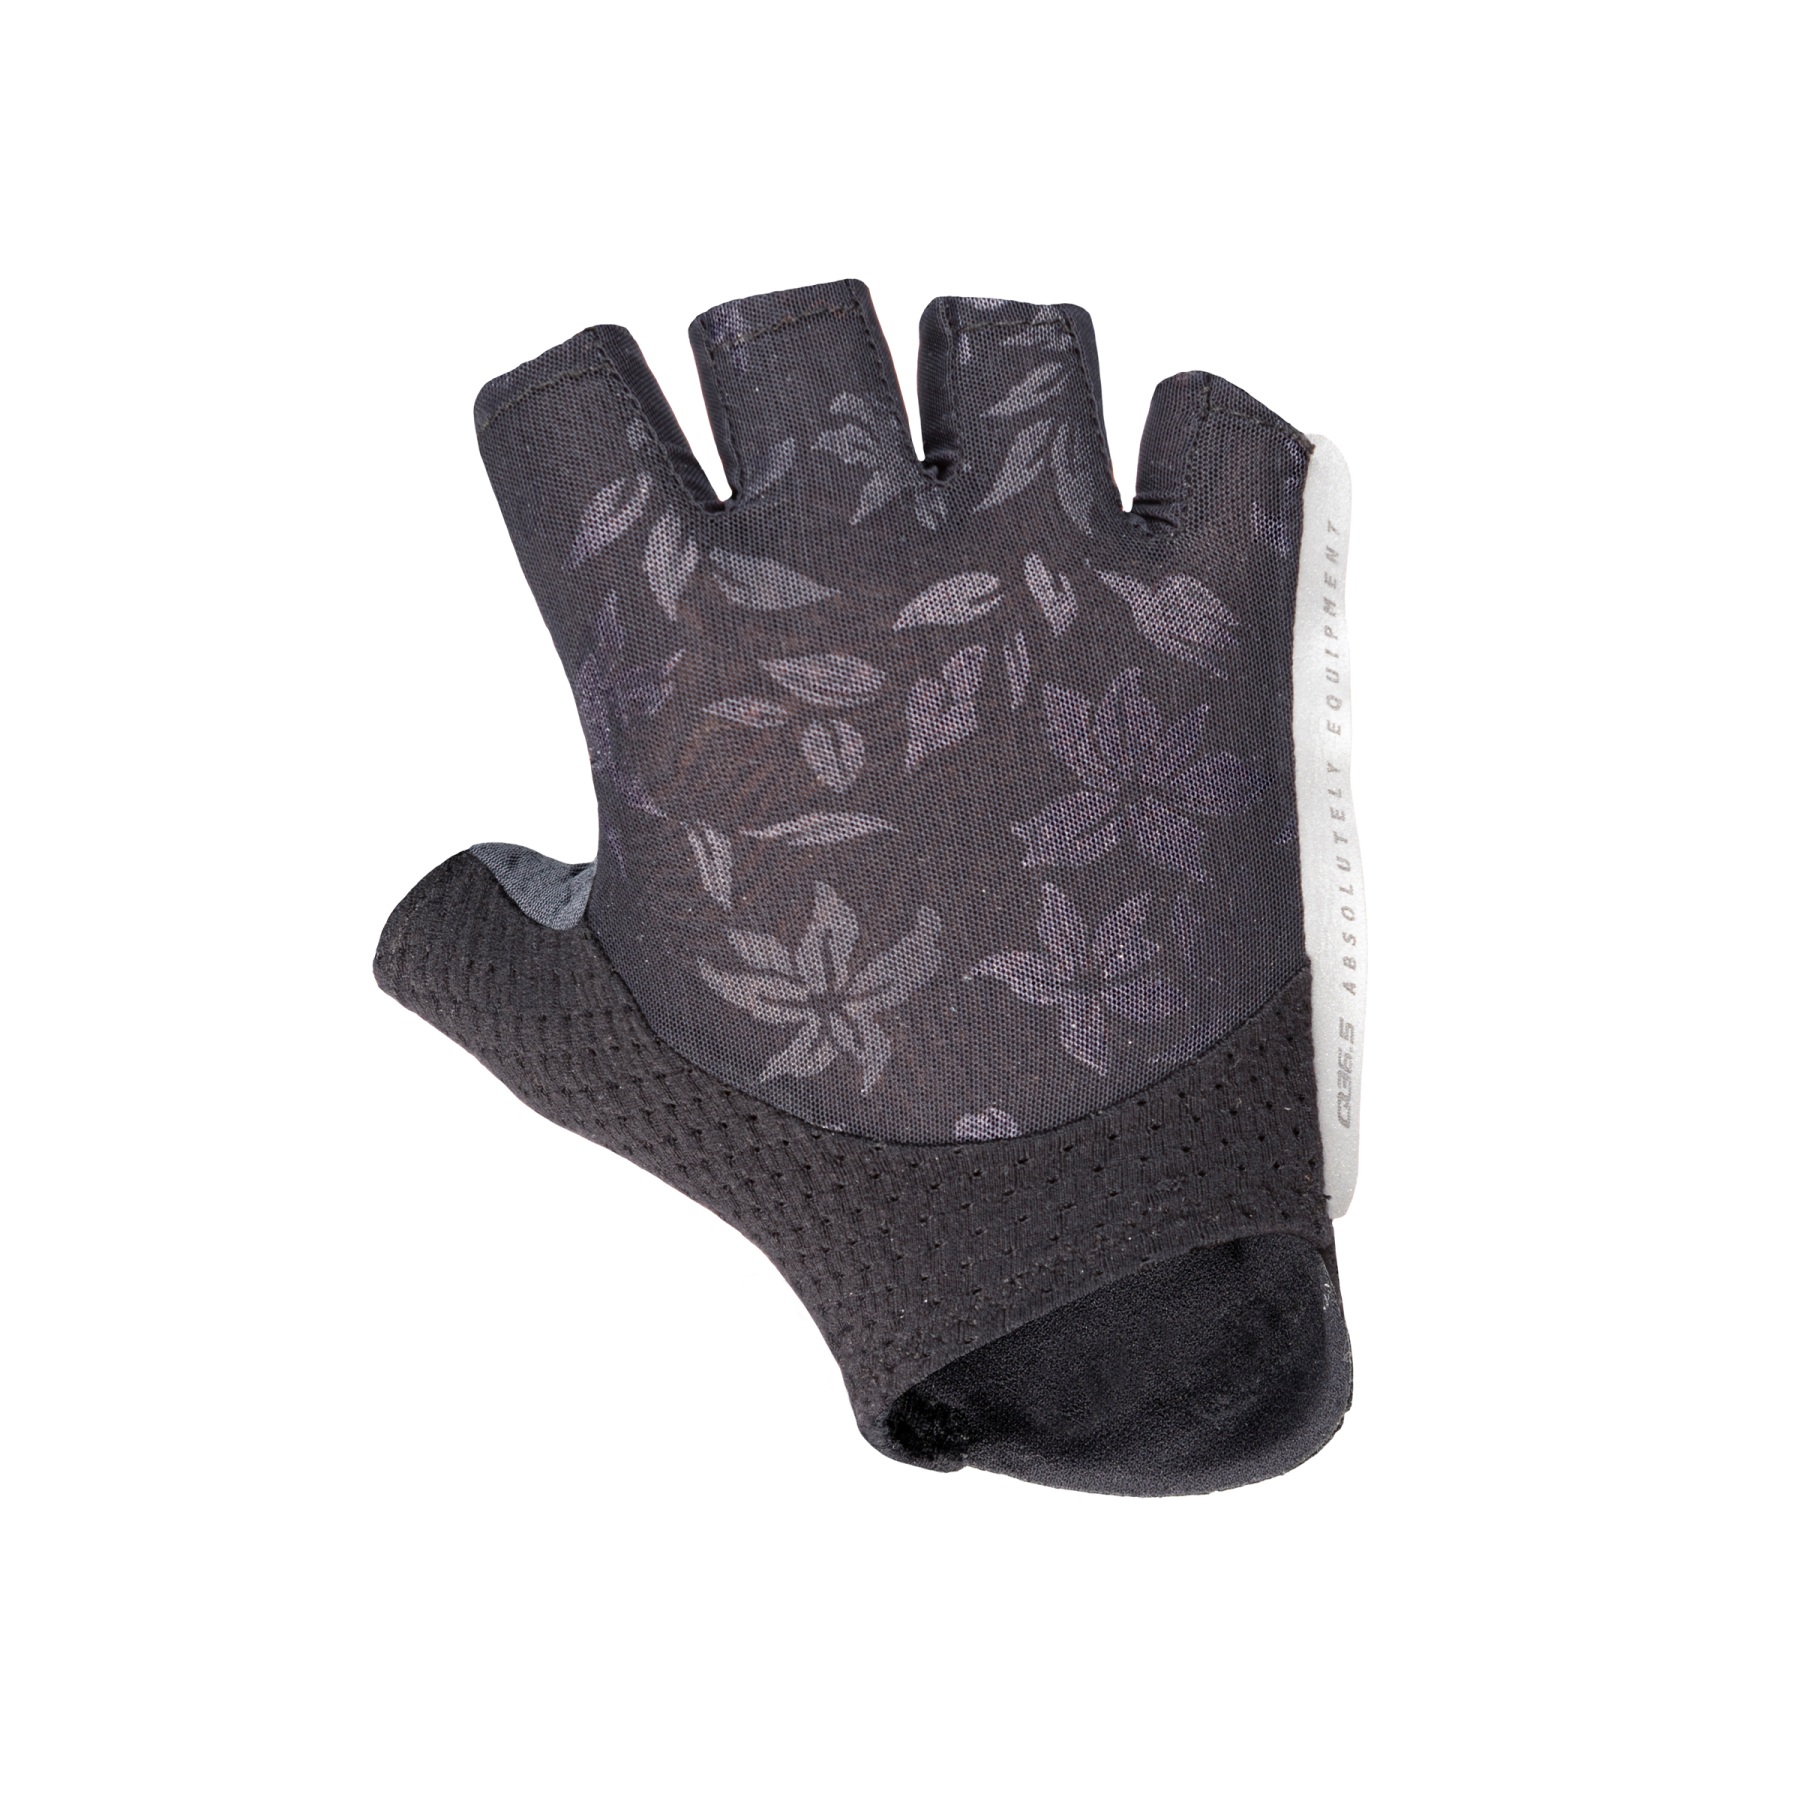 Produktbild von Q36.5 Unique Rennrad Damen Handschuhe - schwarz